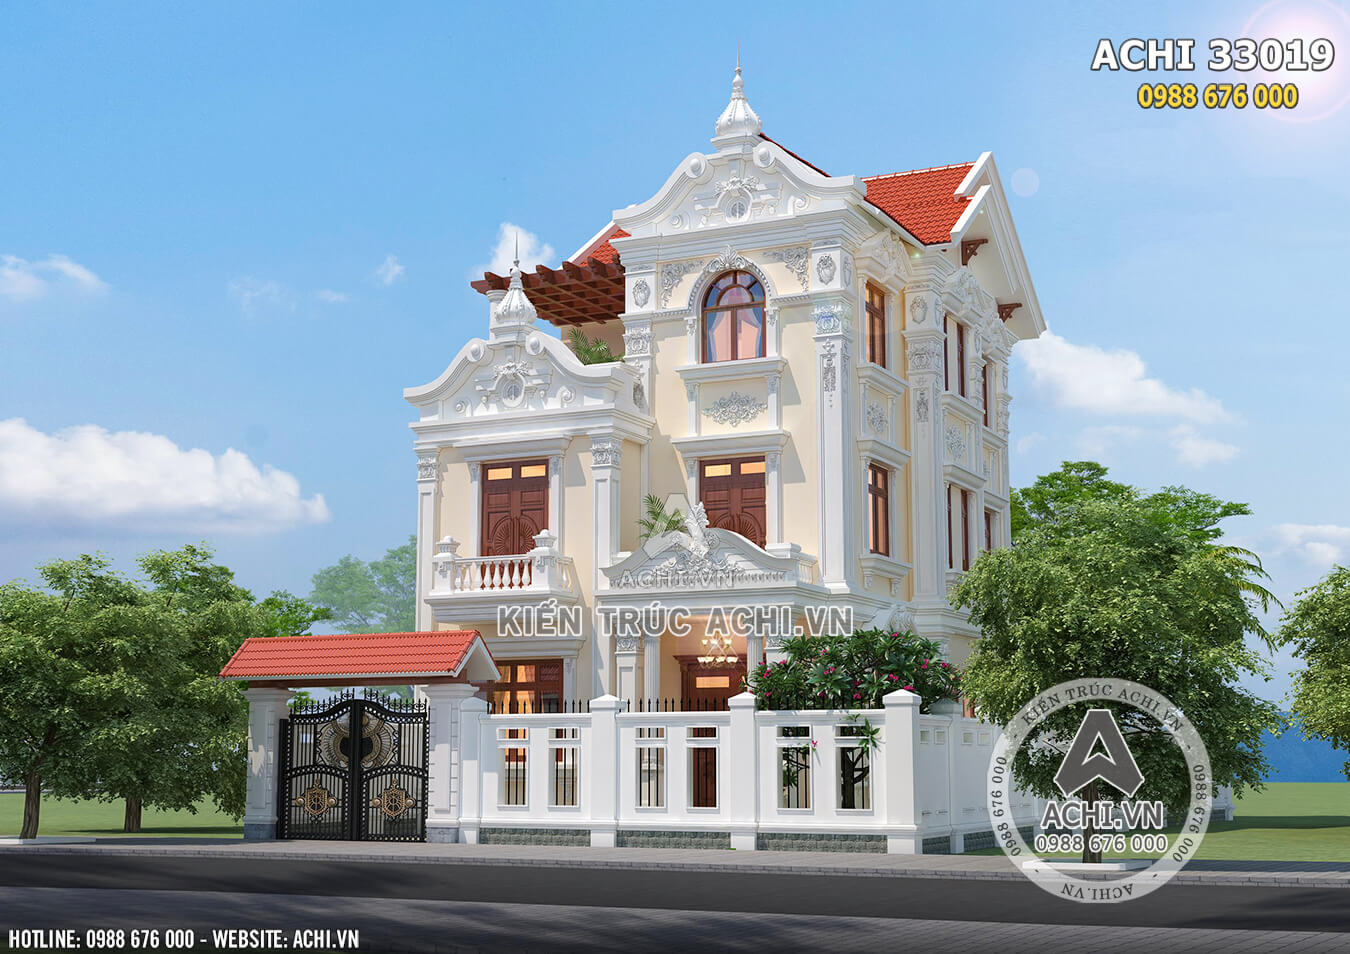 Hình ảnh: Kiến trúc tân cổ điển trong mẫu biệt thự Pháp 3 tầng sang trọng tại Hà Nội – ACHI 33019